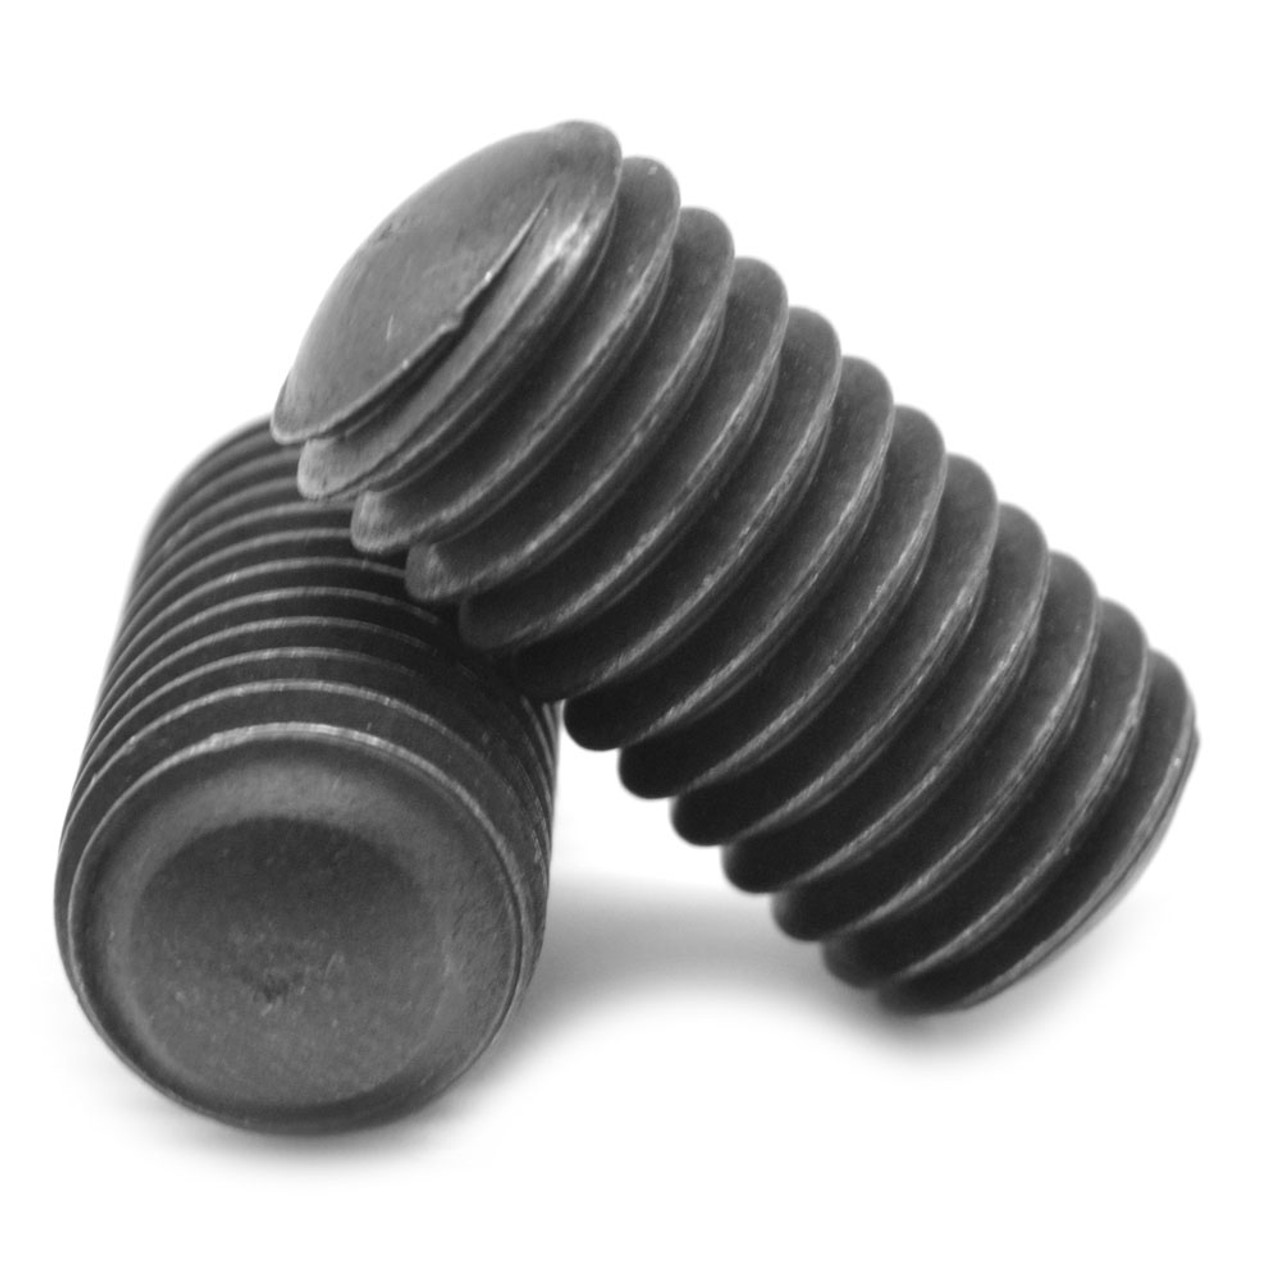 1/4"-20 x 7/8" Coarse Thread Socket Set Screw Oval Point Alloy Steel Black Oxide